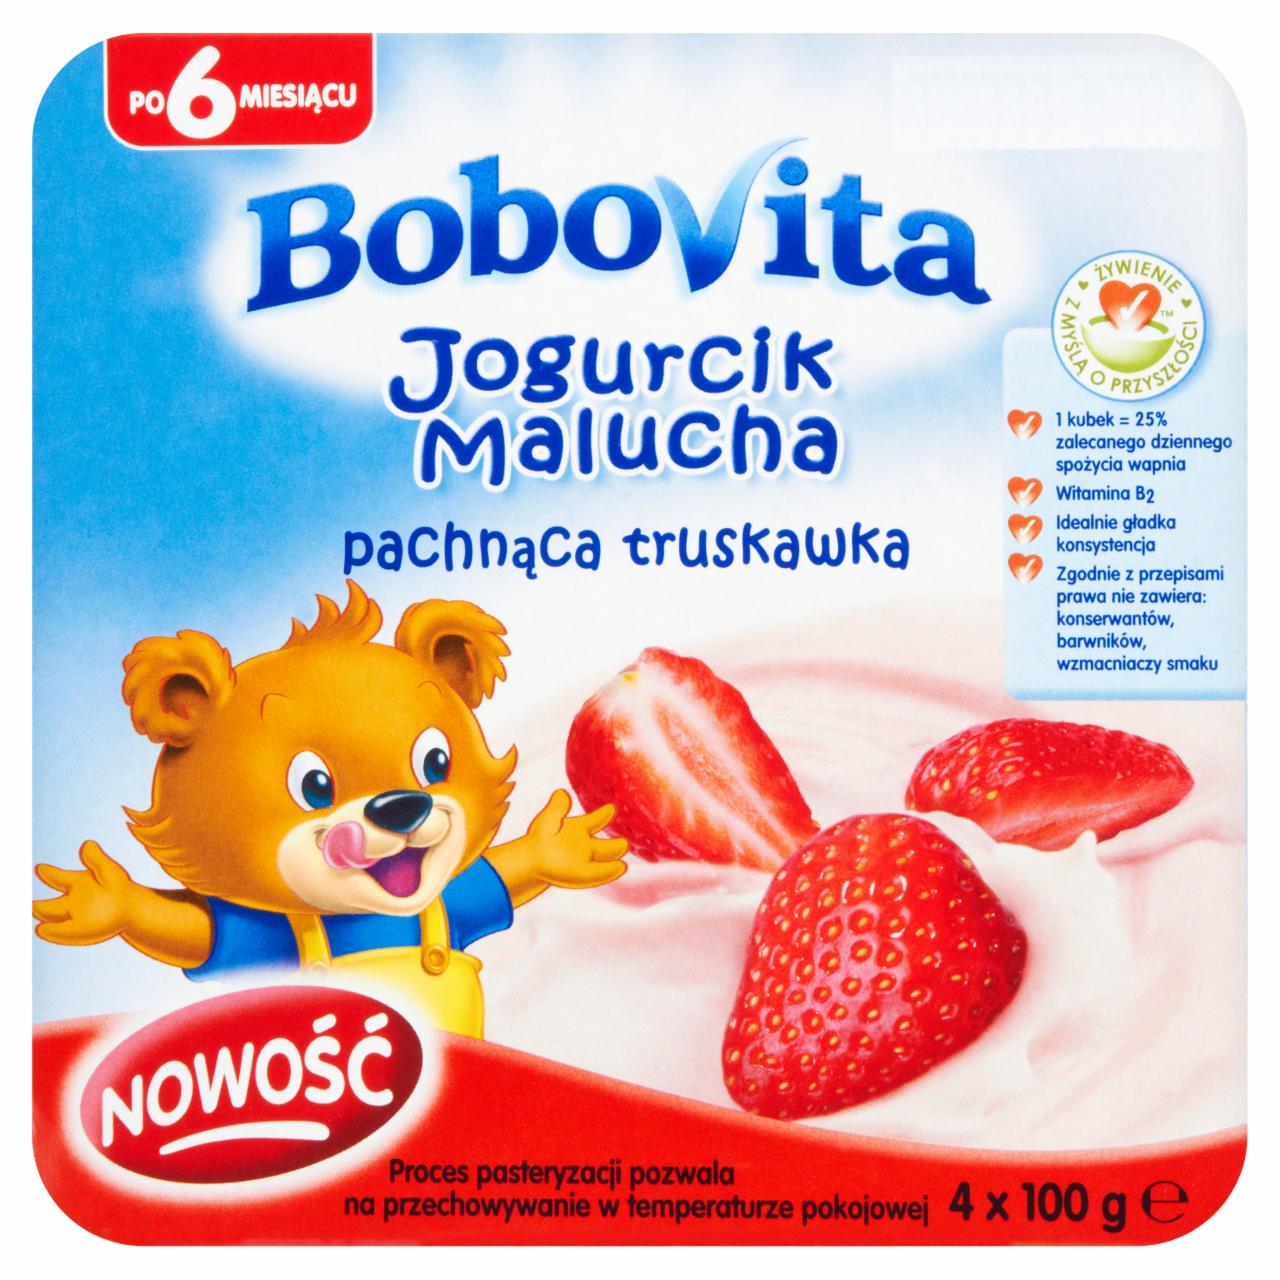 Zdjęcia - BoboVita Jogurcik Malucha pachnąca truskawka po 6 miesiącu 4 x 100 g